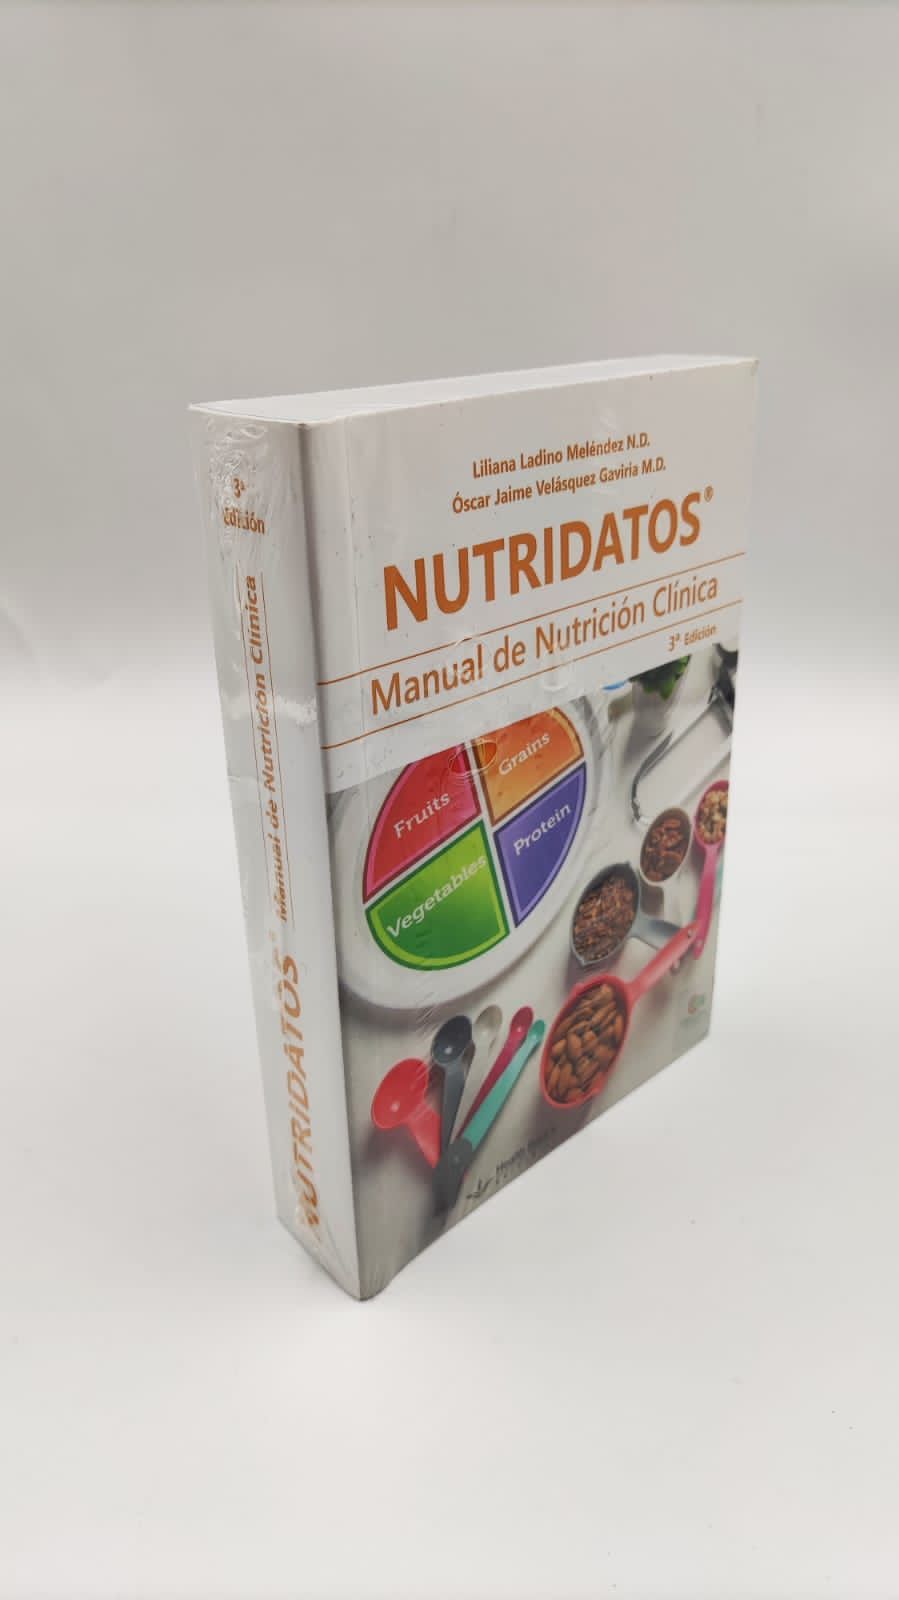 Nutridatos. Manual de nutrición clínica